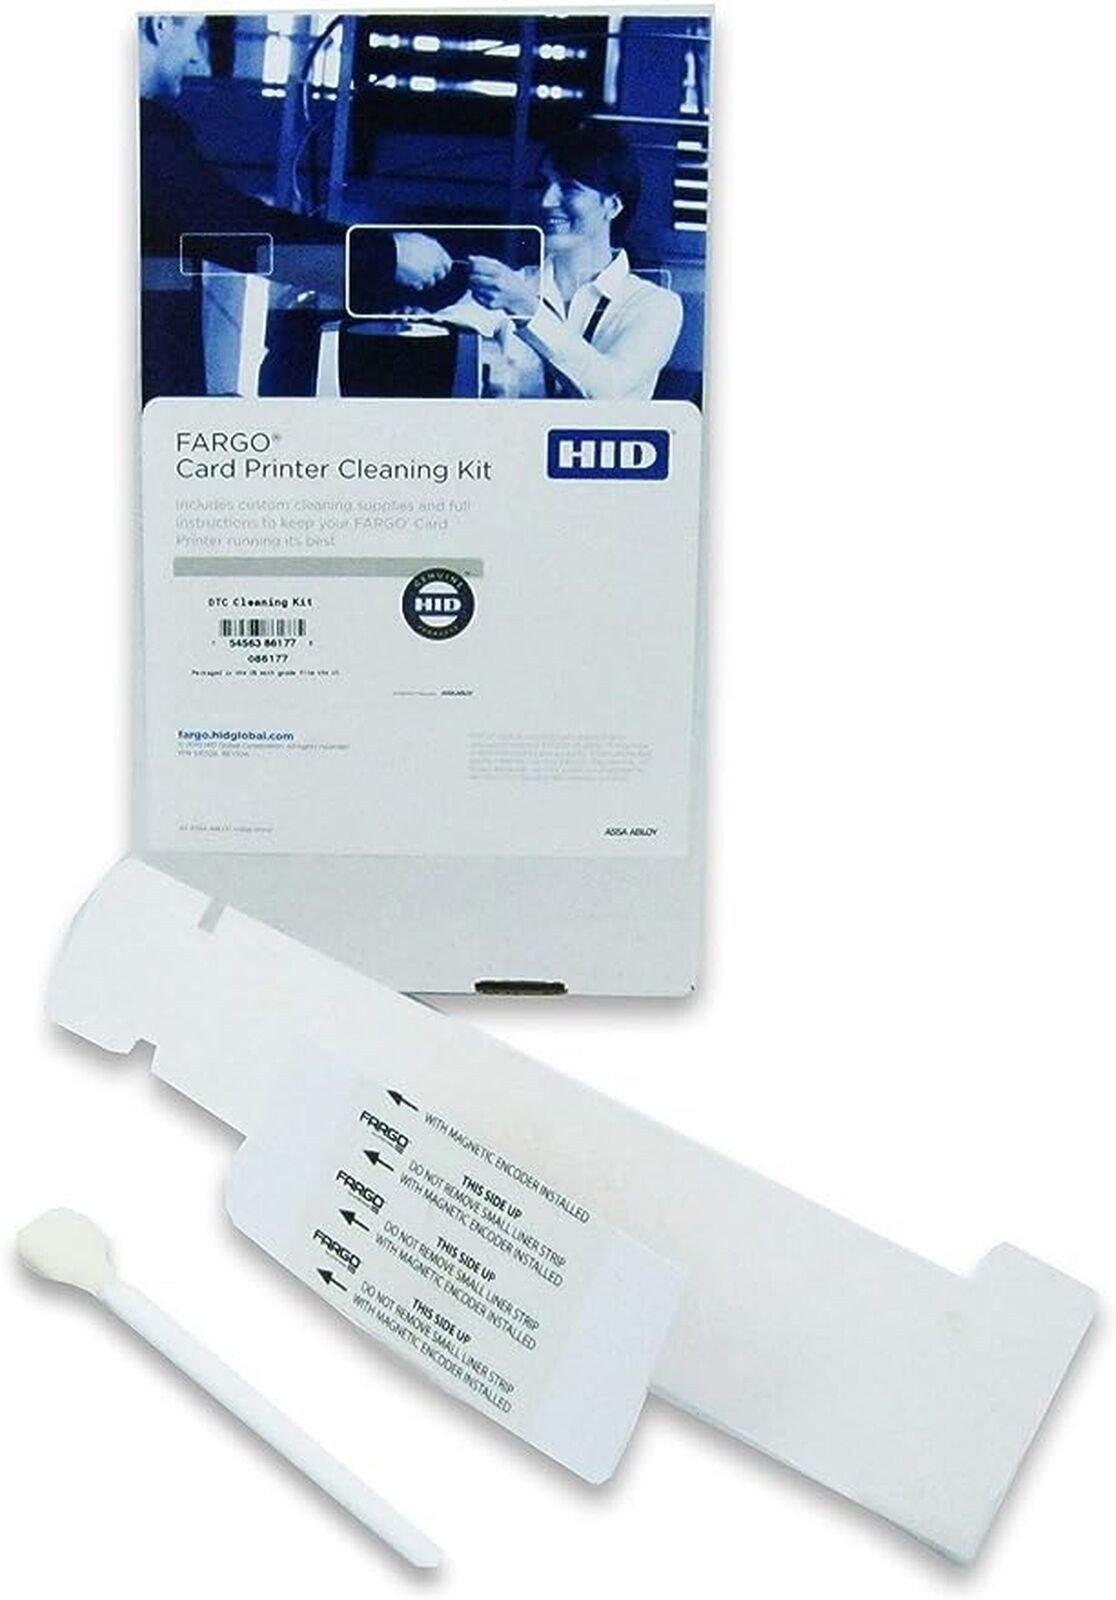 Fargo Cleaning Kit 86177 for DTC 1000, 1250e, 1500, 4250e, 4500e, C30, C50 Pr...